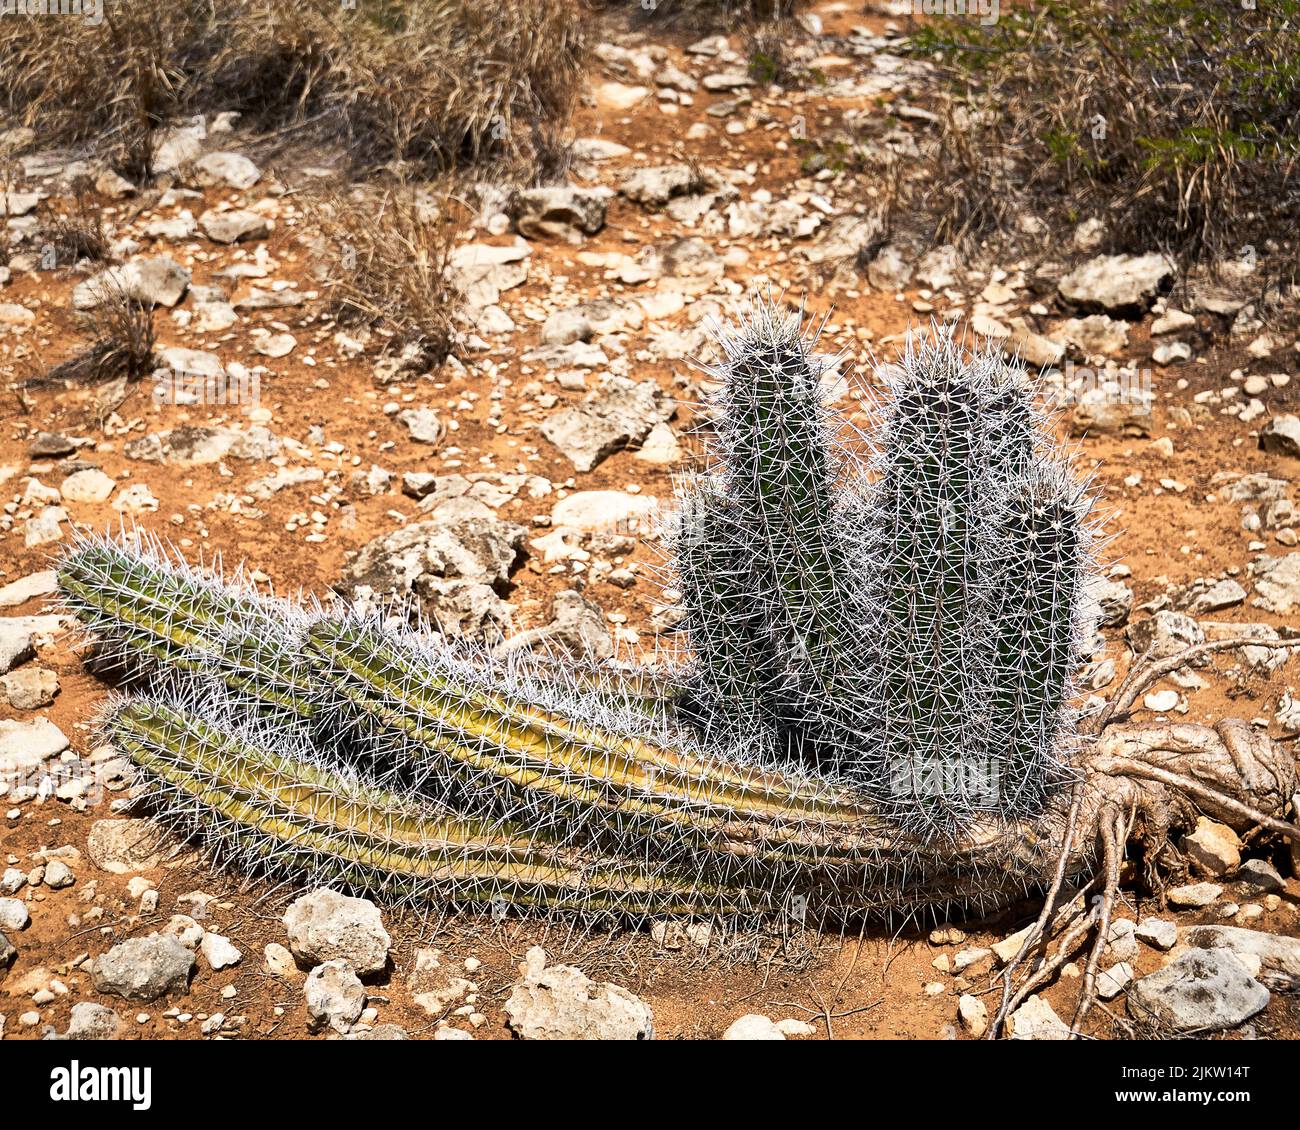 Piccolo cactus verde e giallo, adagiato sul terreno sabbioso e roccioso del deserto di colore arancione. Foto Stock